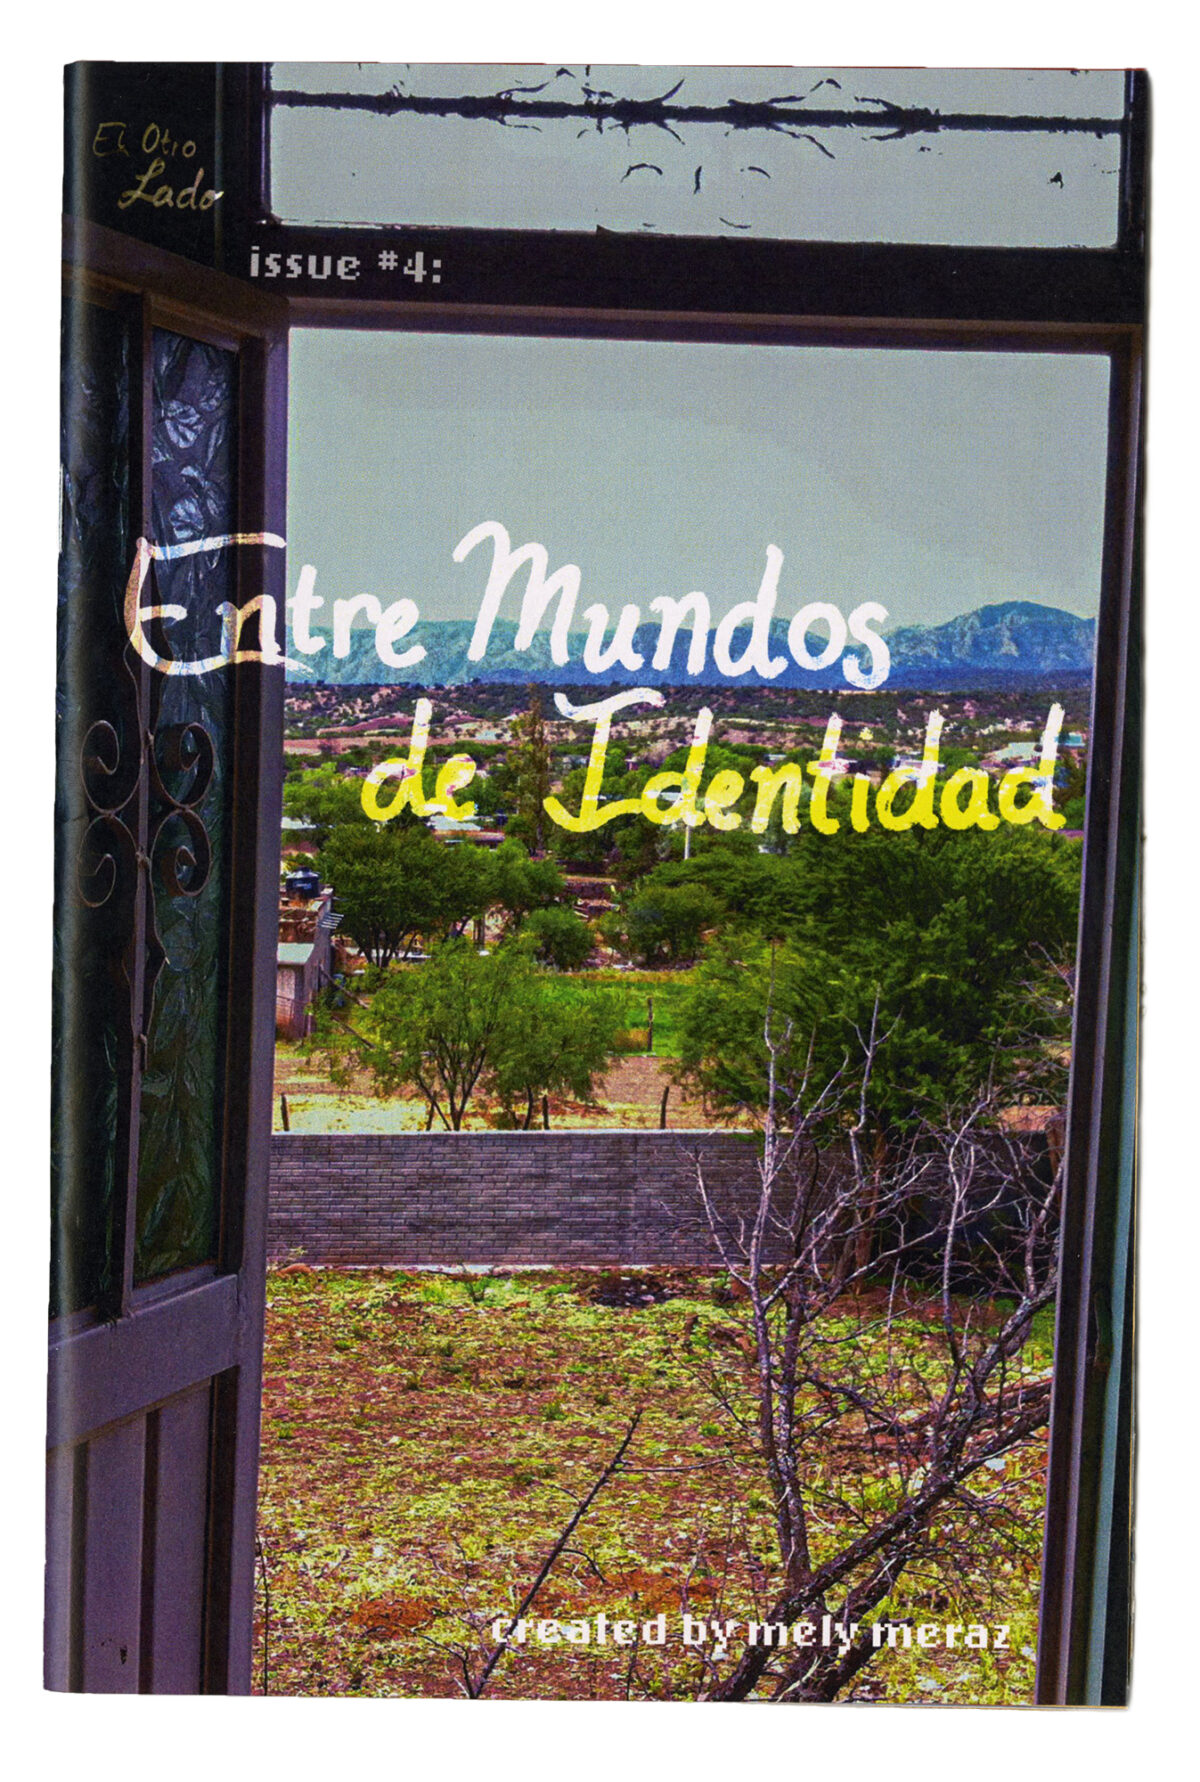 El Otro Lado, Issue #4: Entre Mundos de Identitidad, Front and Back Covers